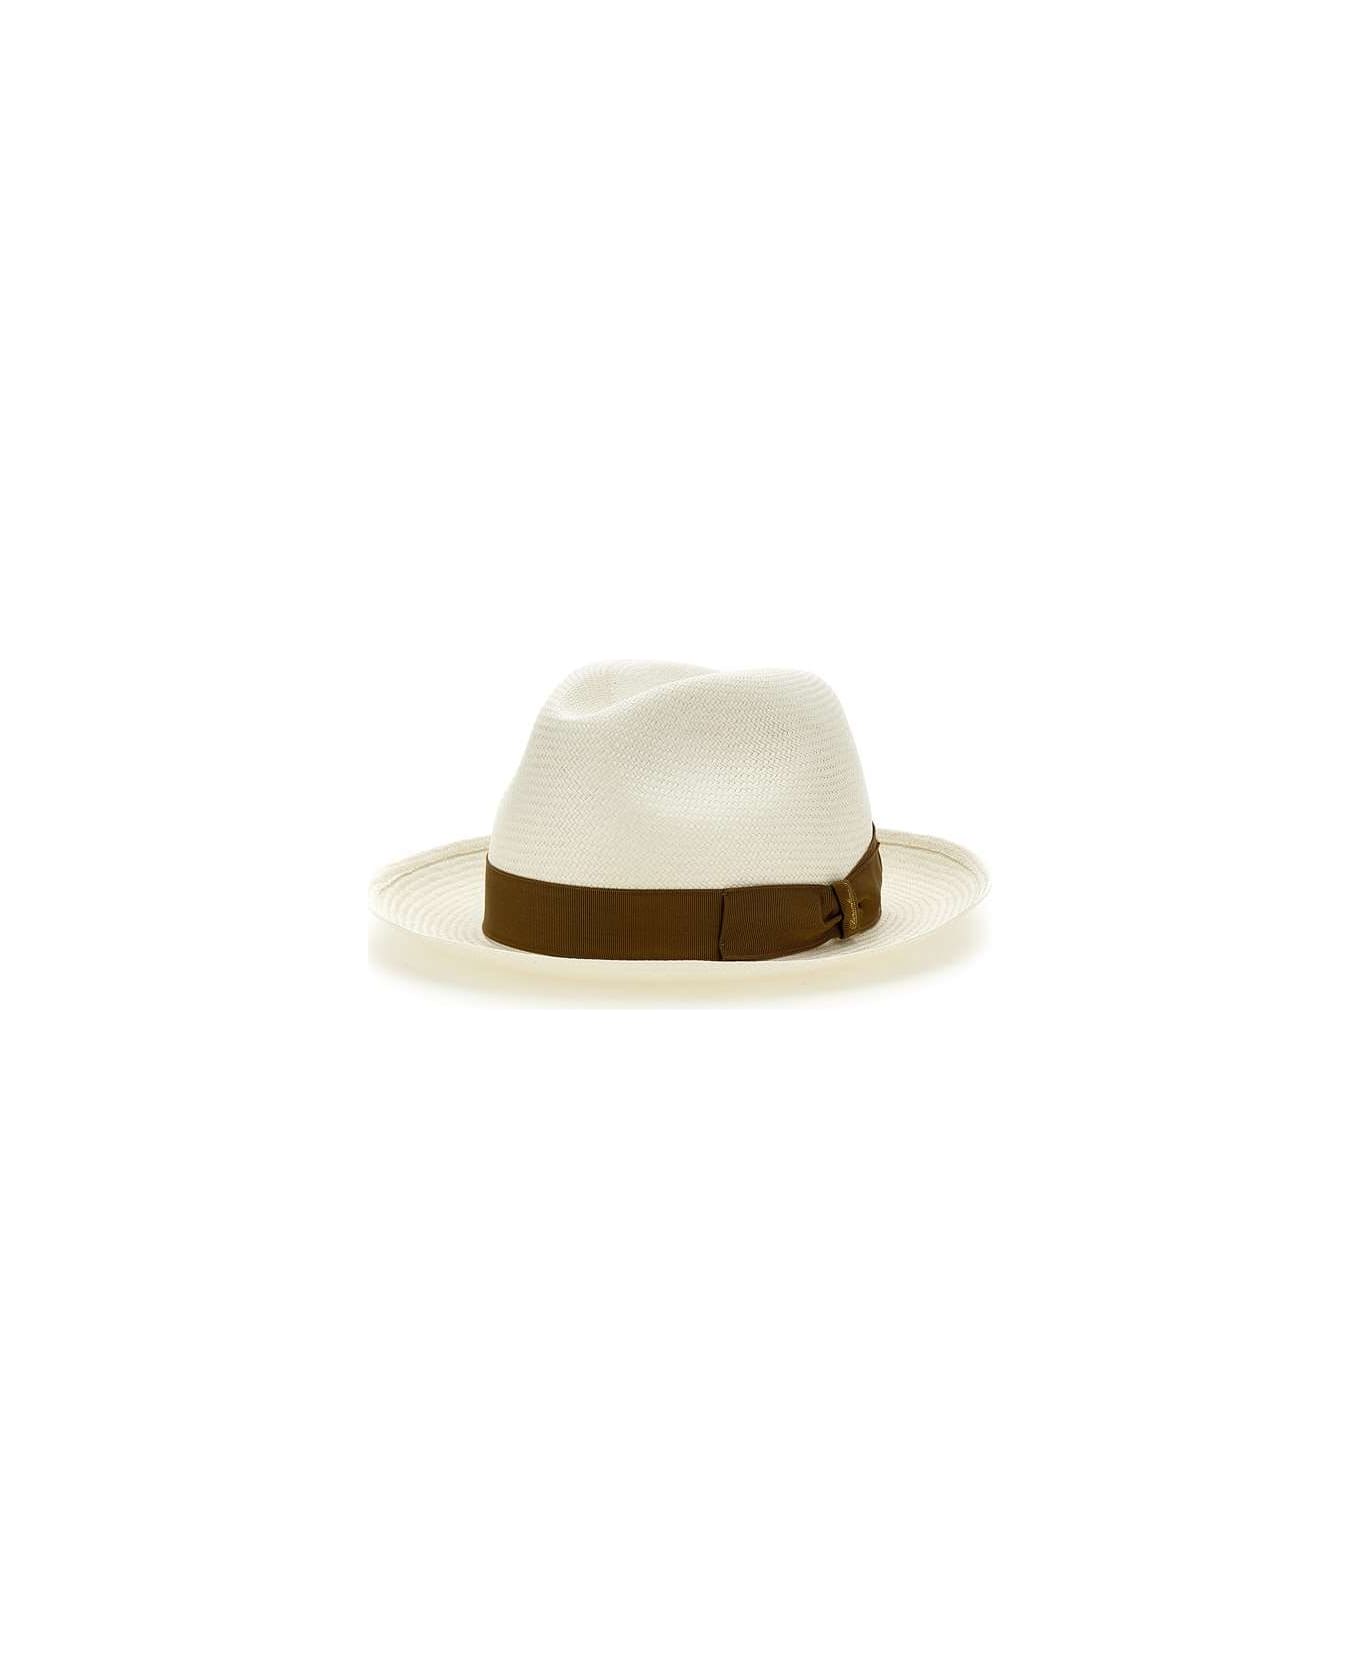 Borsalino "panama" Straw Hat - WHITE 帽子